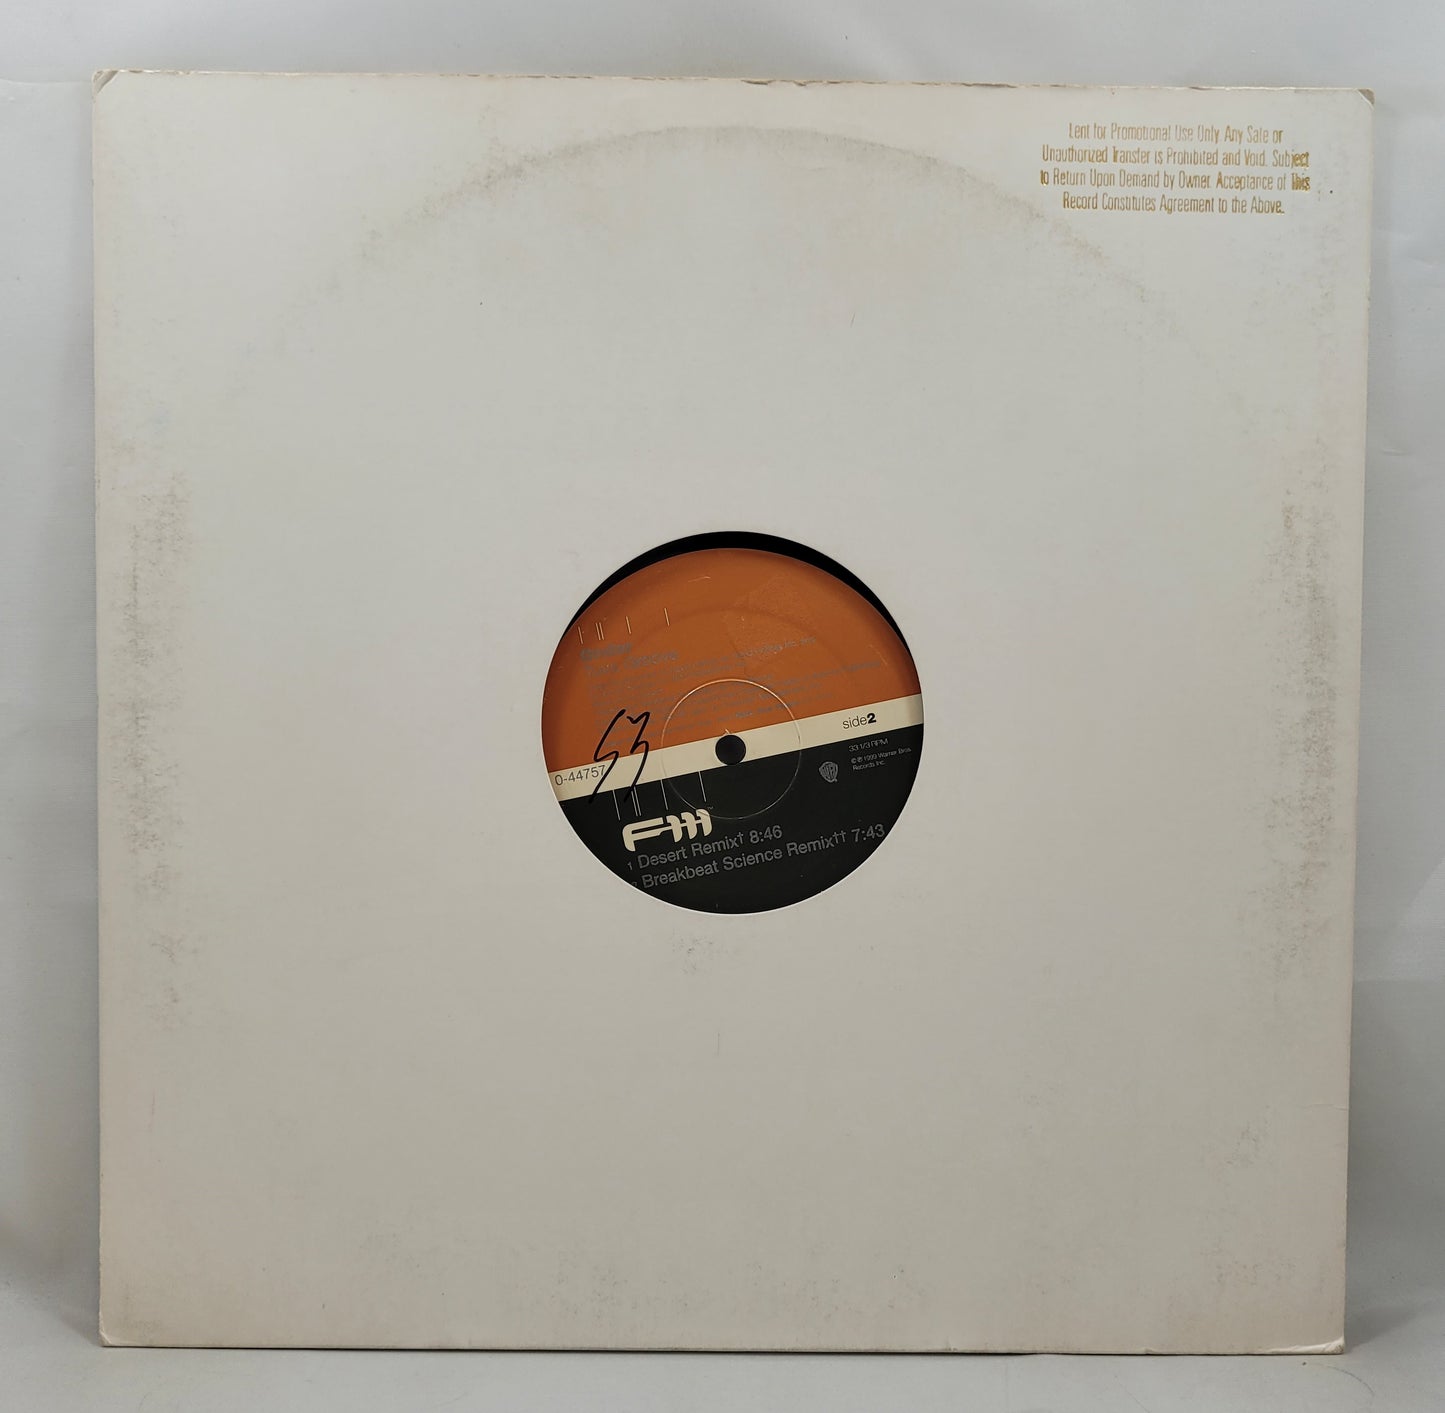 Ondar (Kongar-Ool Ondar) - Tuva Groove [Vinyl Record 12" Single]